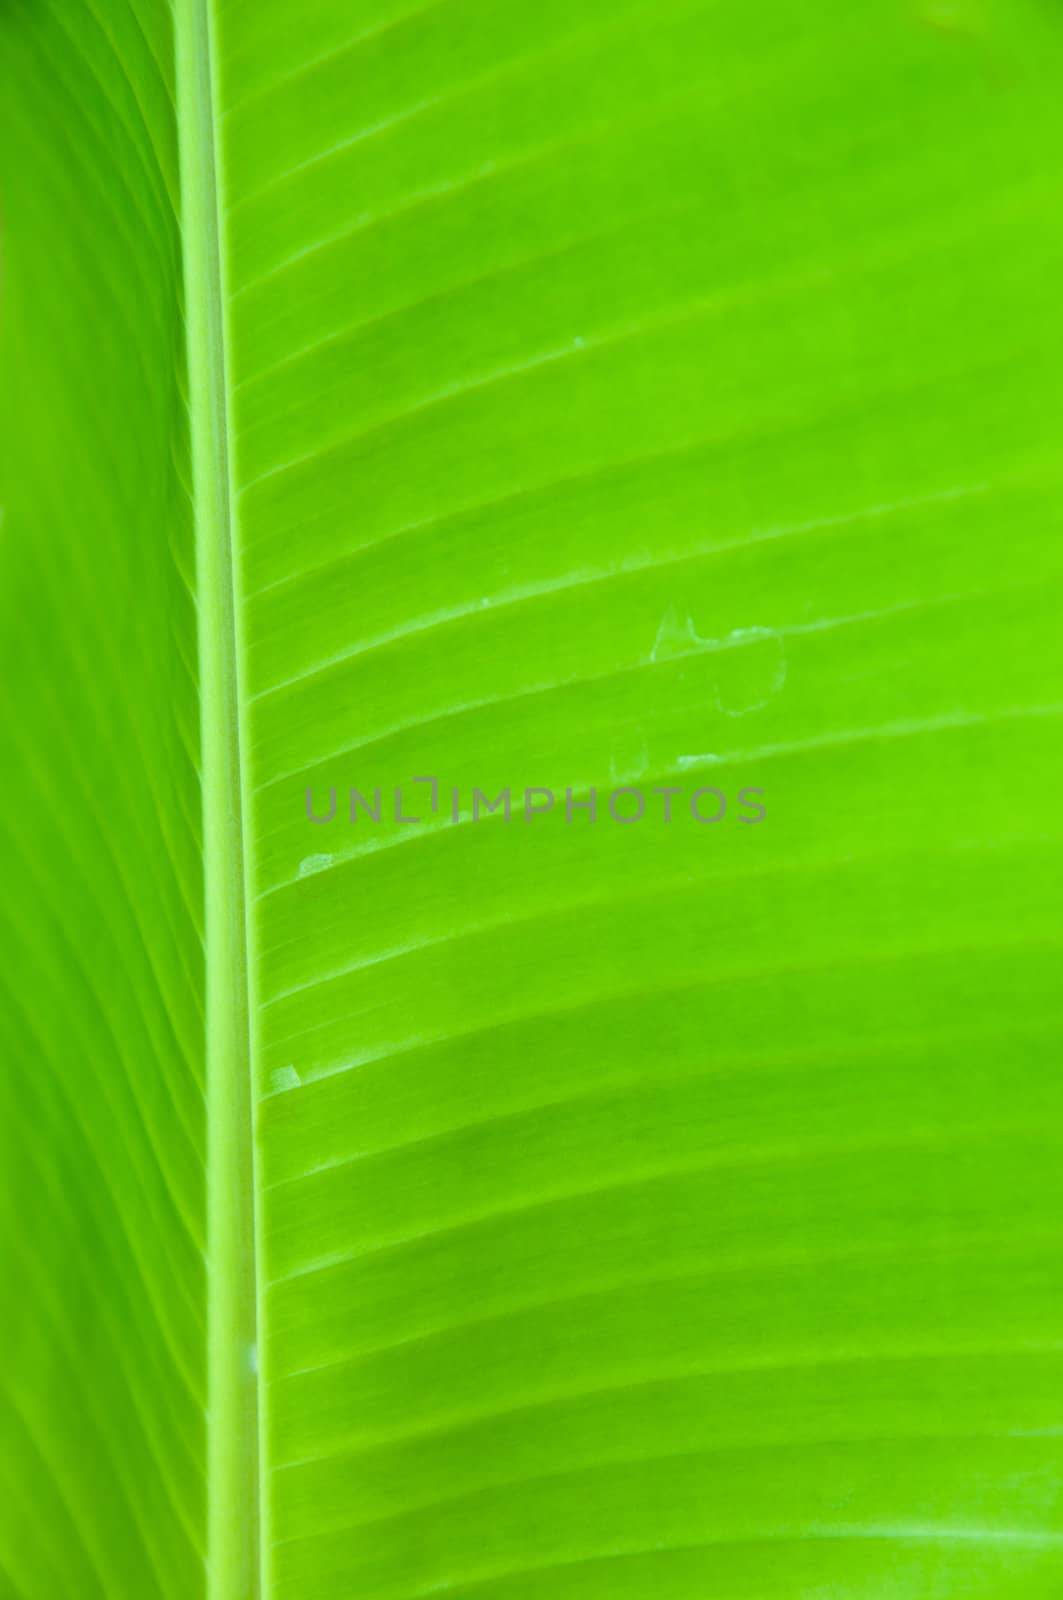 Green Banana Leaf by sayhmog